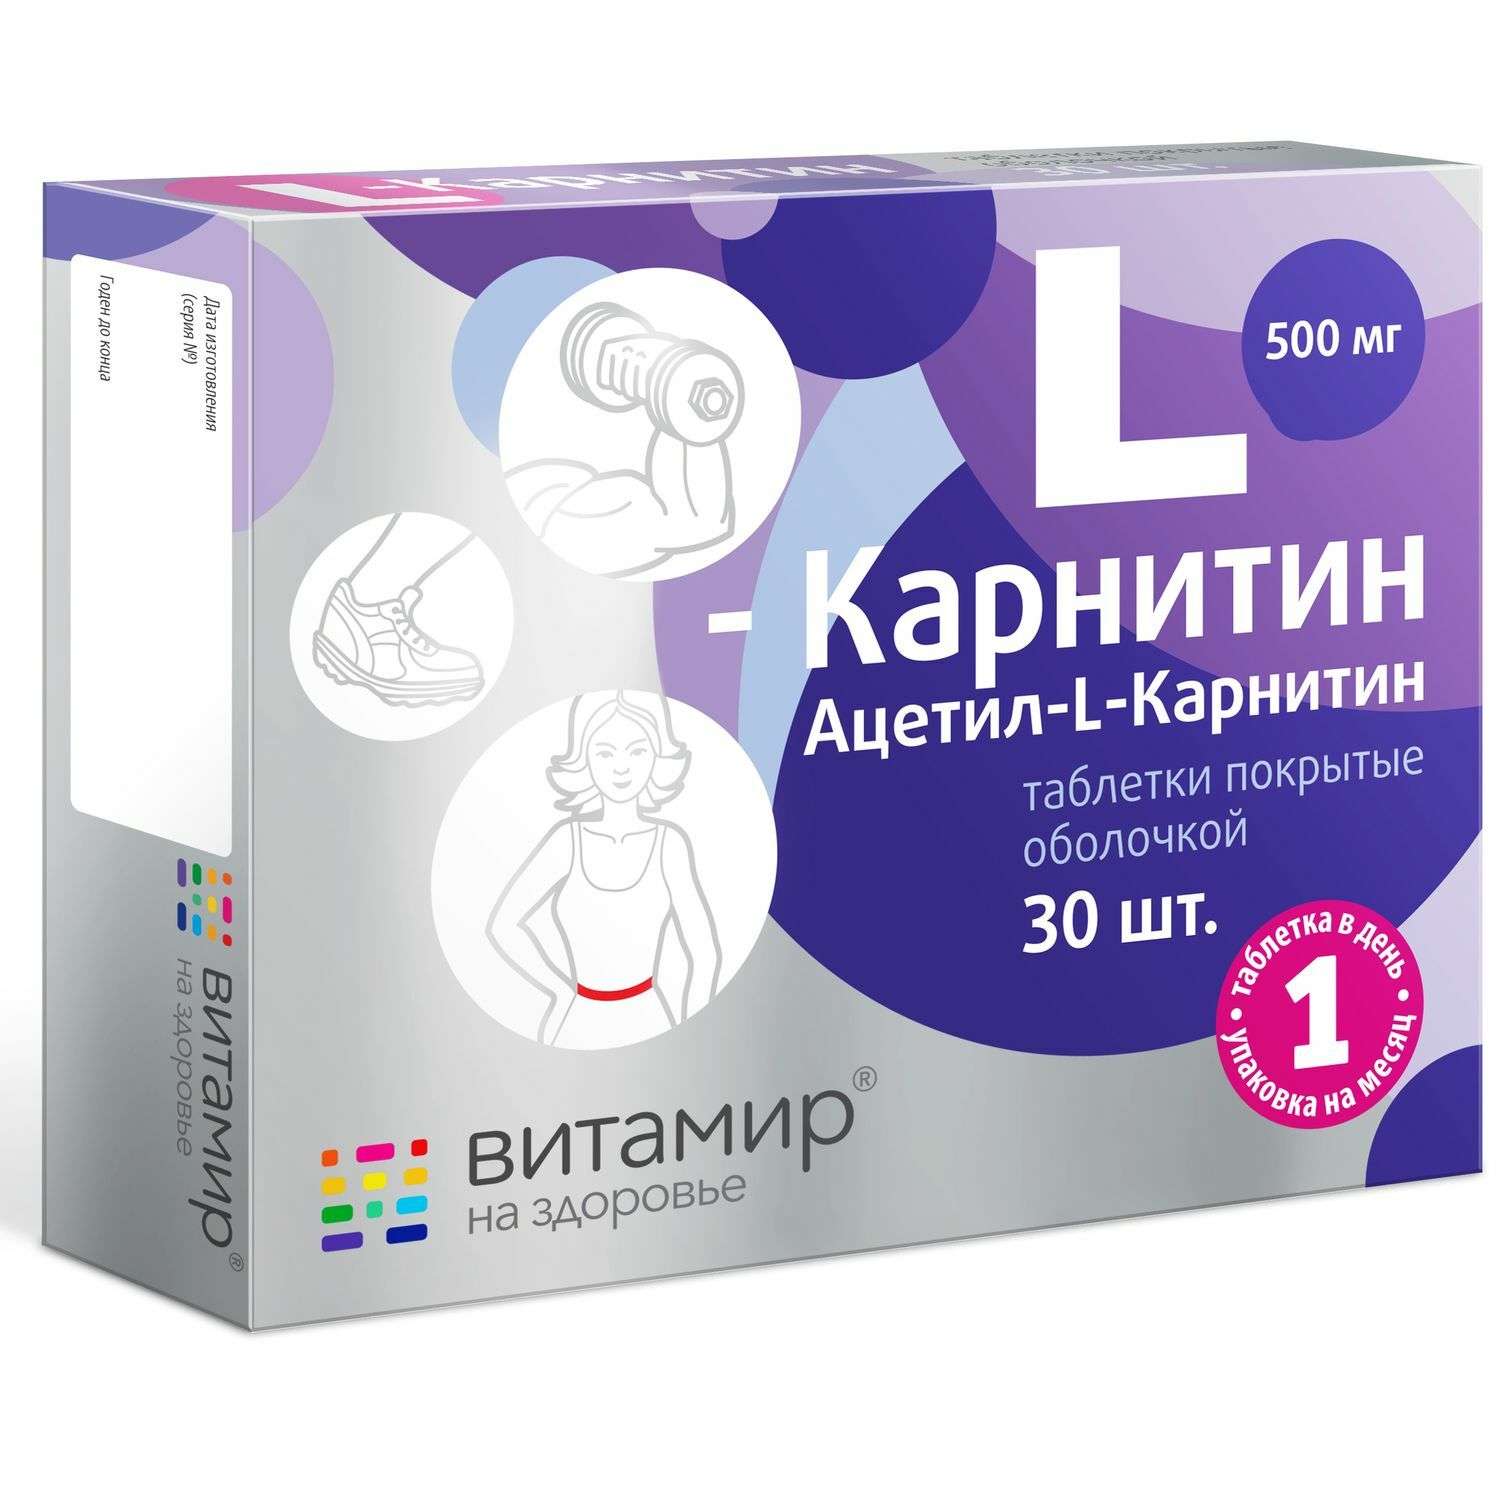 Витамир L-Карнитин 500 мг 30таблеток - фото 1